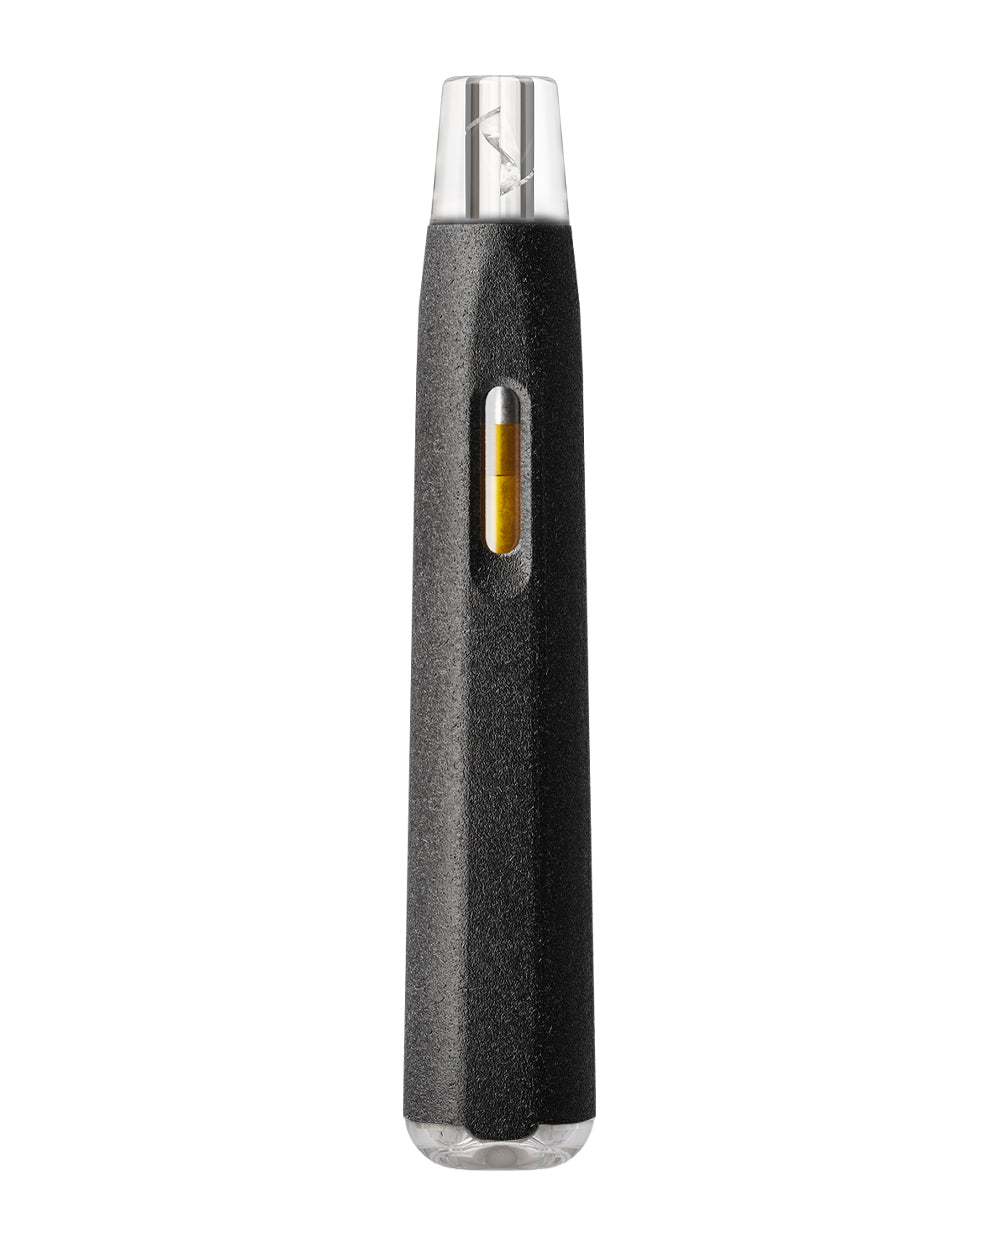 AVD | Stem Black Hemp Plastic Blend Rechargeable Disposable Vape Pen w/ Clear Vortex Mouthpiece | 1mL - 220 mAh  - 1